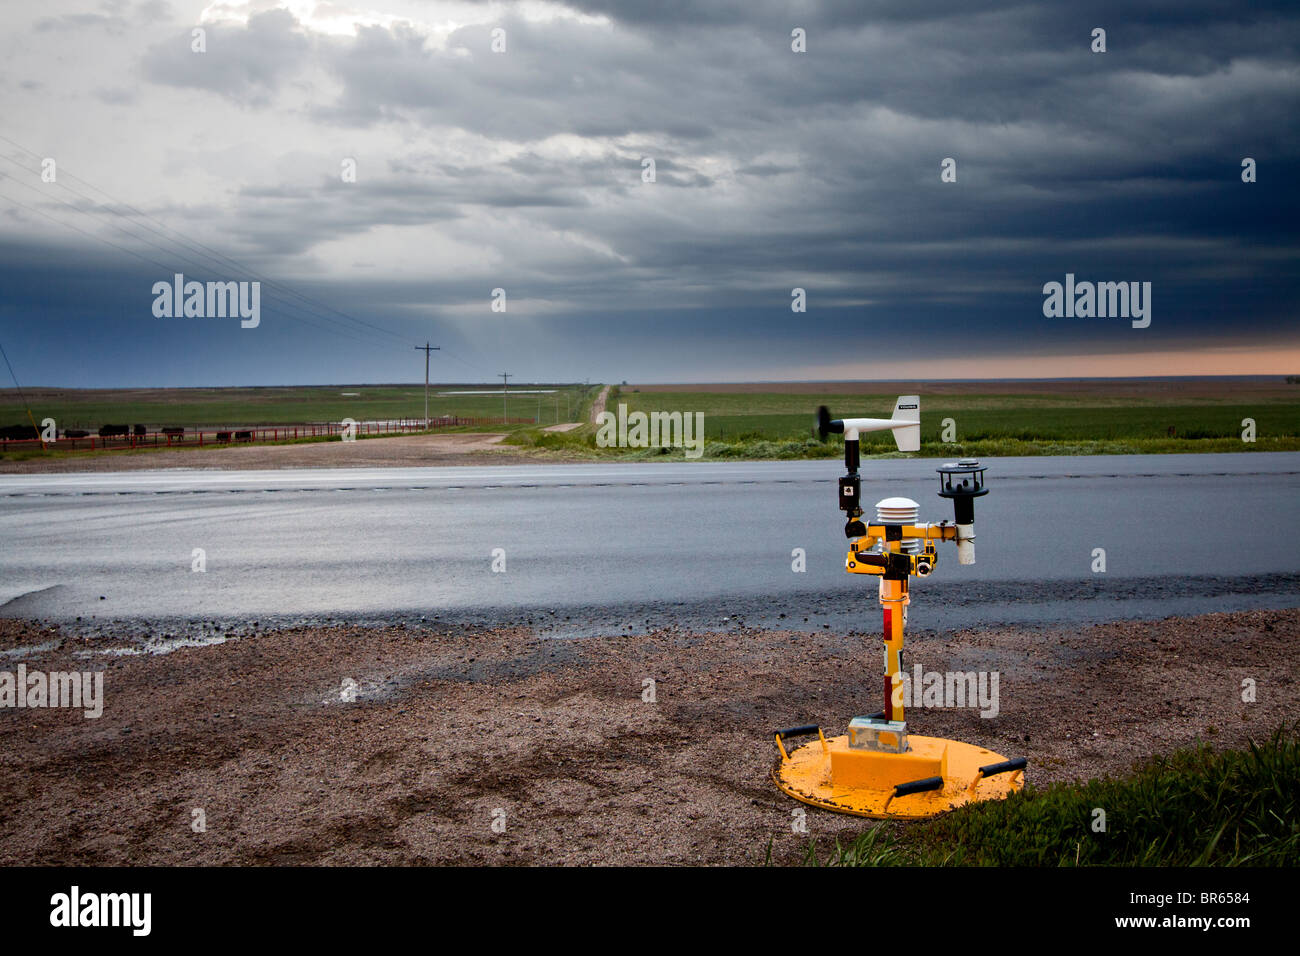 Une tornade "pod", un dispositif créé pour mesurer l'intérieur de champs de vent, une tornade est assis de côté d'une route au Kansas, le 6 mai 2010. Banque D'Images